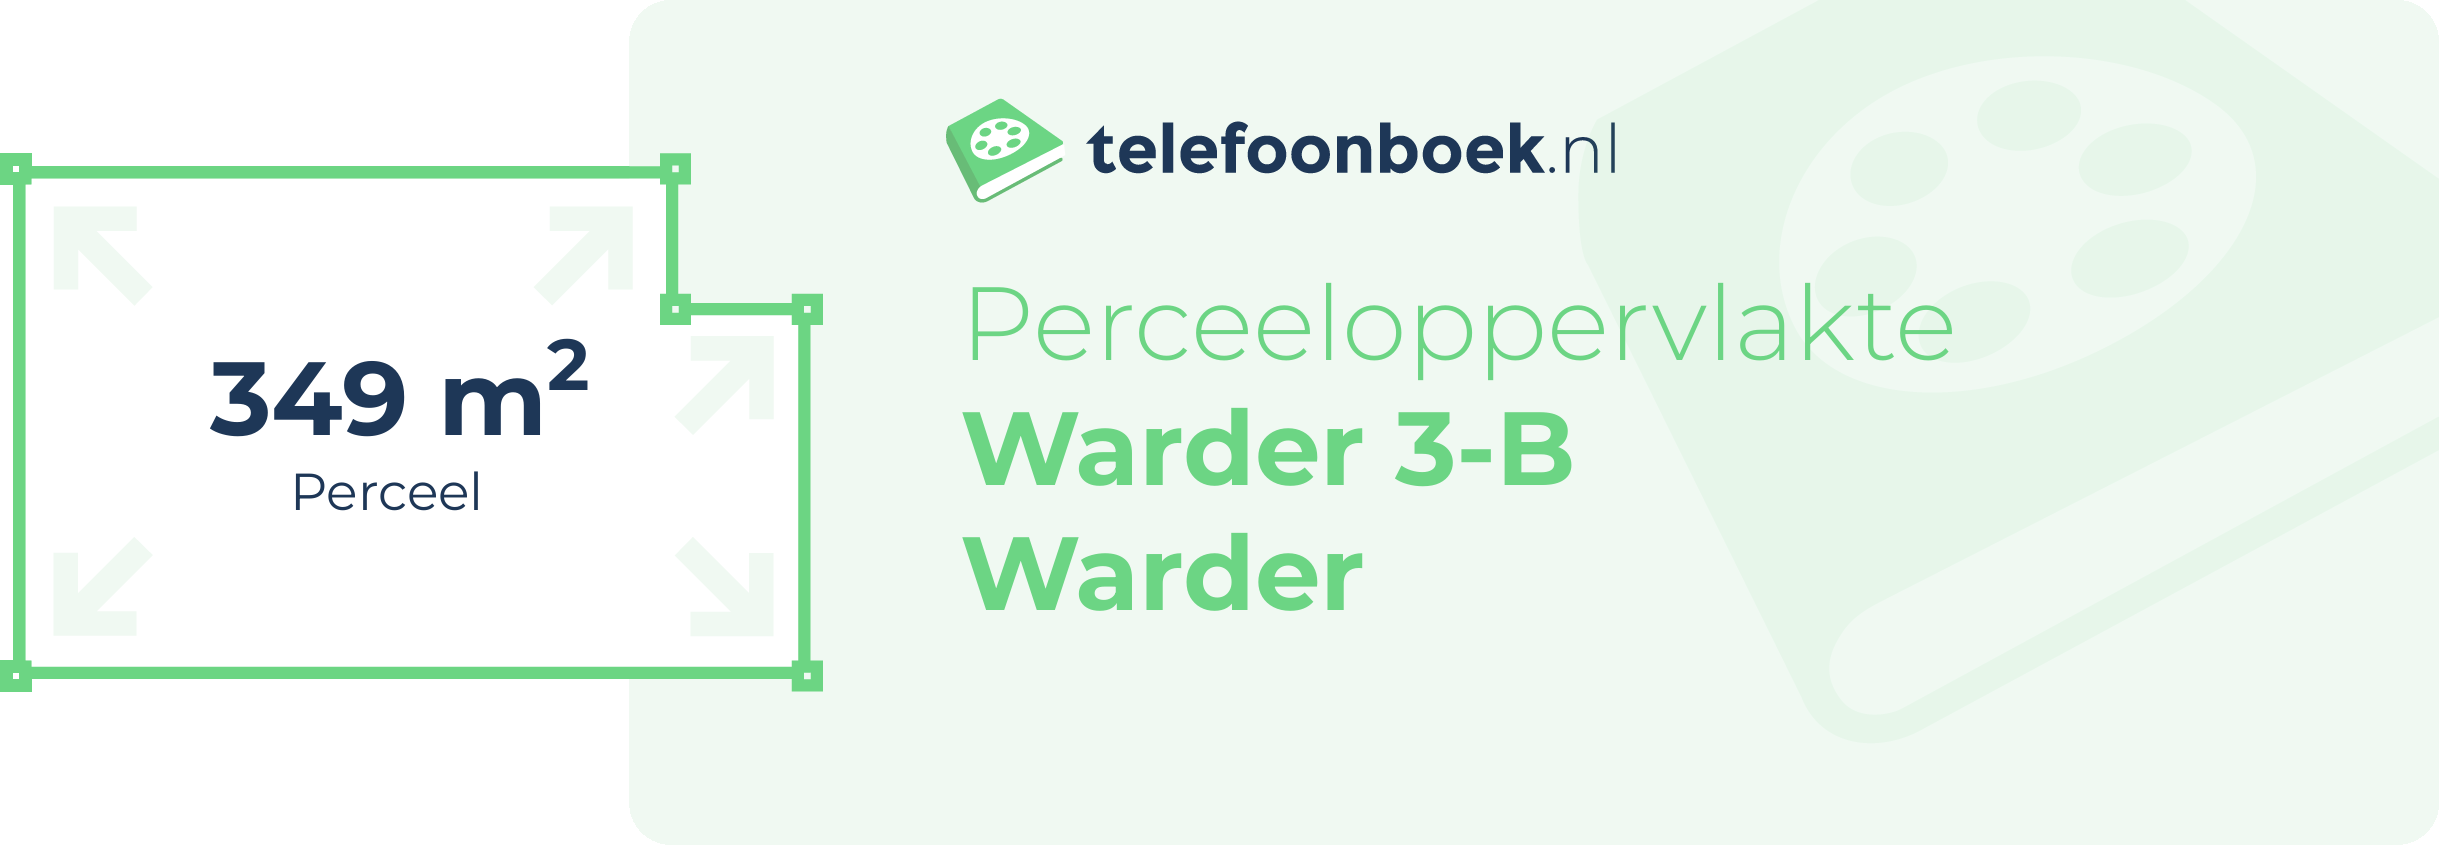 Perceeloppervlakte Warder 3-B Warder